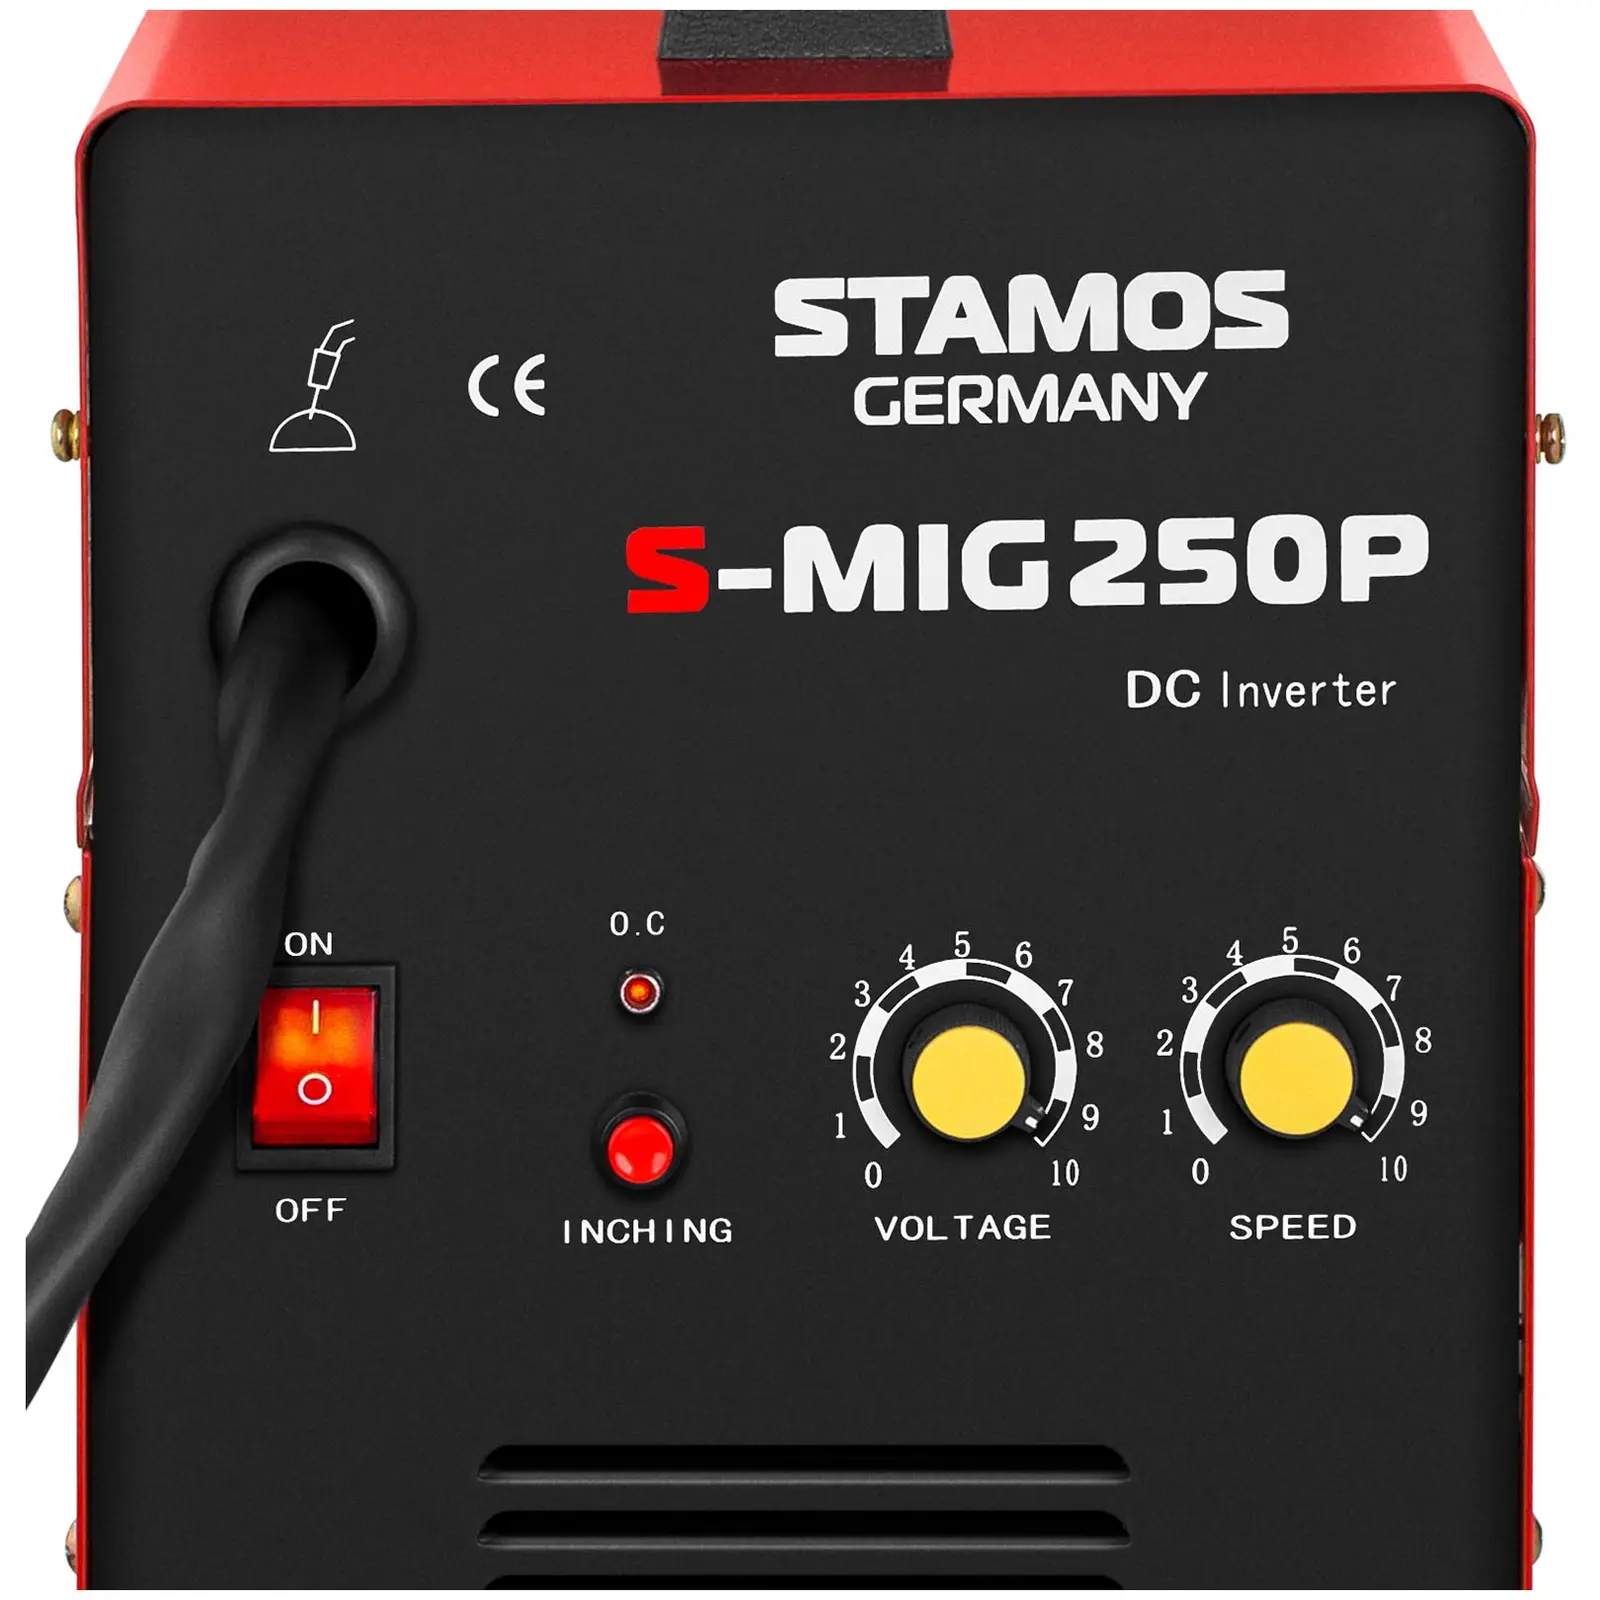 MIG/MAG-svets - 250 A - 230 V - 60% intermittens